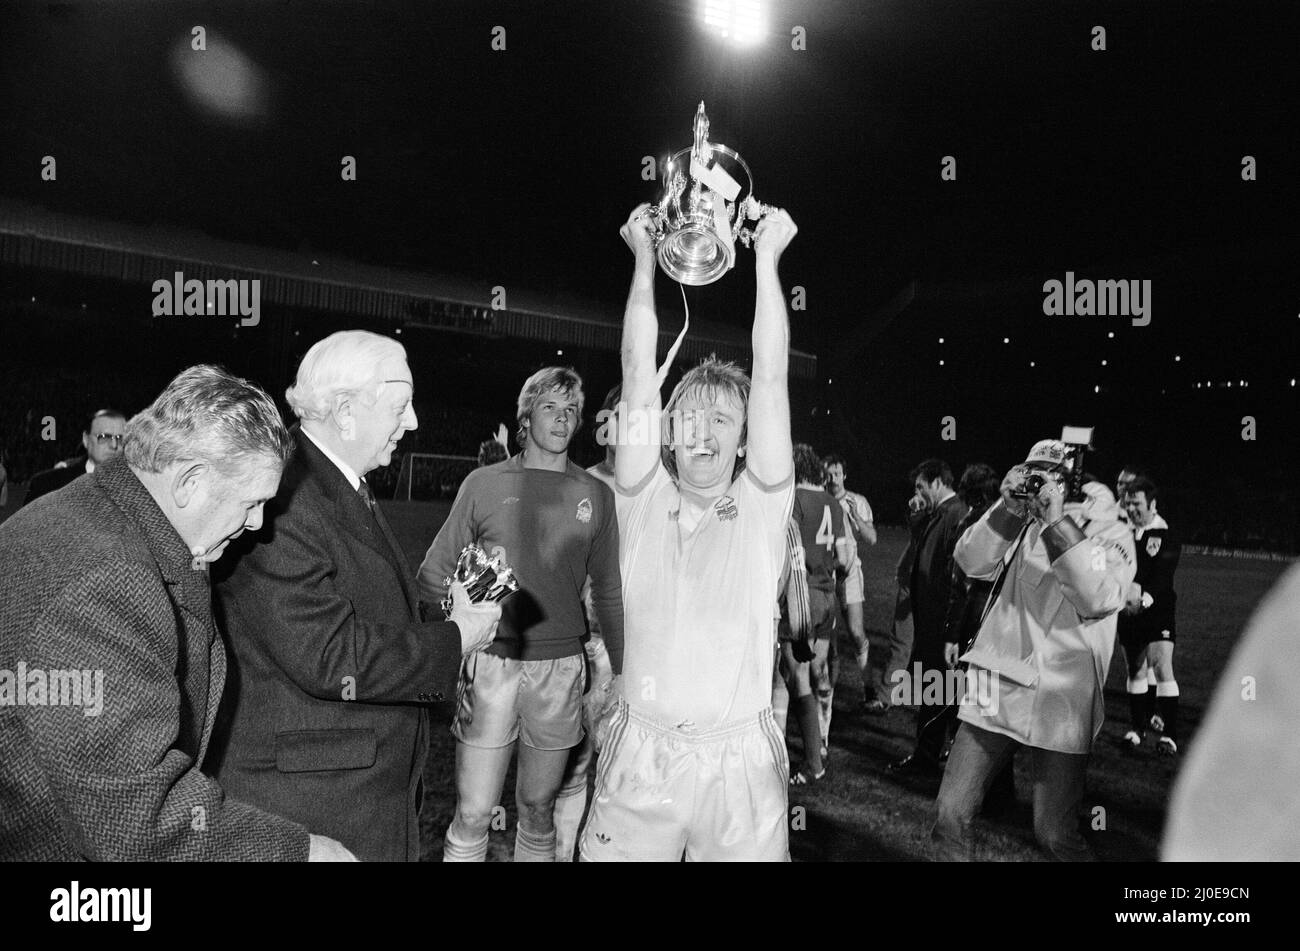 La finale della Coppa di Calcio 1978 fu la diciottesima finale della Coppa di Lega, e fu contestata tra Liverpool e Nottingham Forest. La partita iniziale ha portato a un'estrazione di 0?0 al Wembley Stadium il 18 marzo 1978. Il replay è stato quattro giorni più tardi a Old Trafford, e ha visto John Robertson segnare dal punto di rigore dopo un fallo di Phil Thompson su John o'Hare, che la TV replay confermato è stato effettivamente al di fuori della zona di rigore.(Picture) Nottingham Forest capitano Kenny Burns solleva la Coppa di Lega. 22nd marzo 1978 Foto Stock